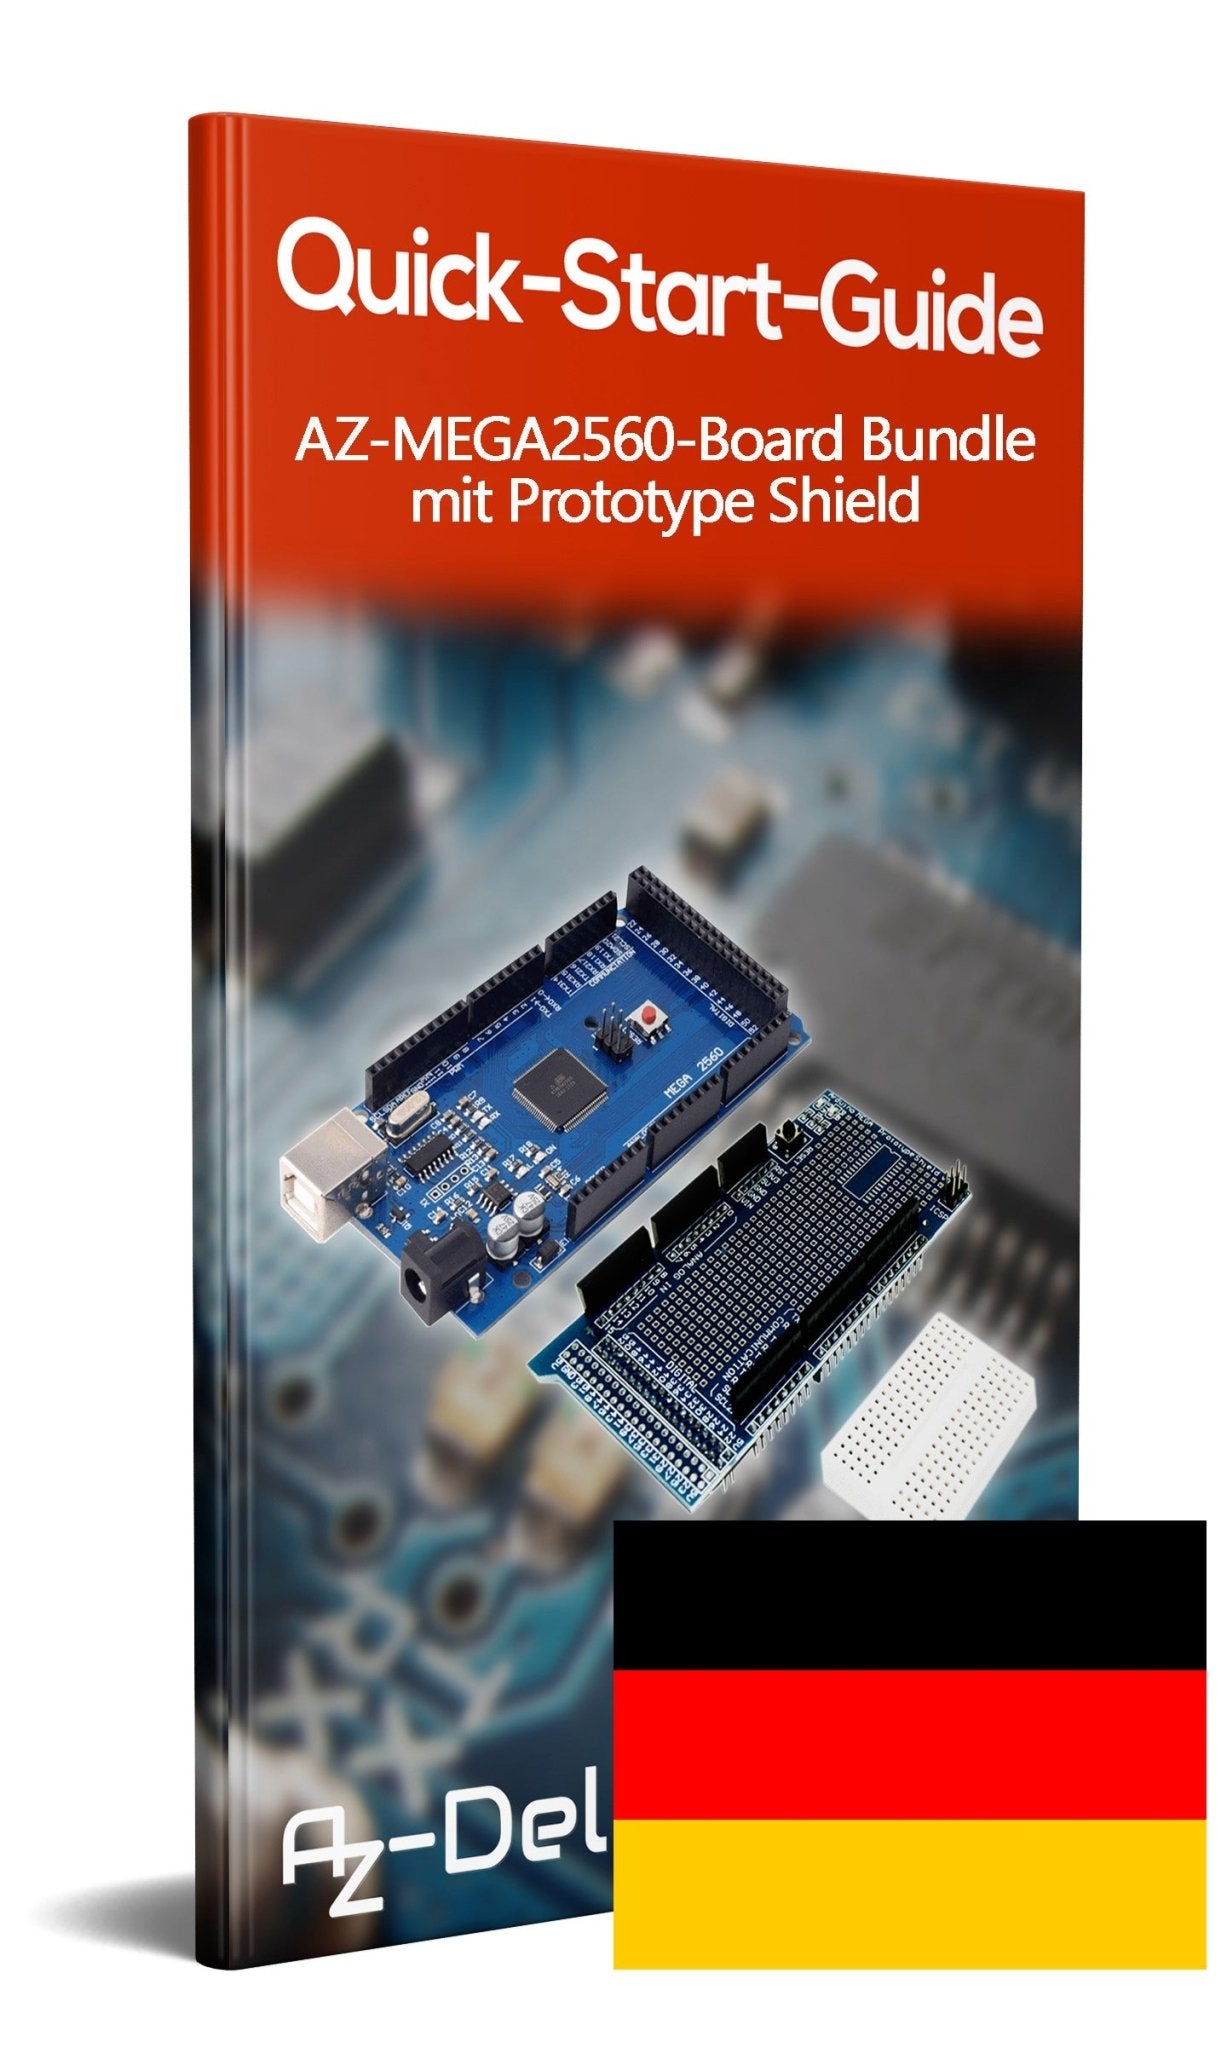 AZ-MEGA2560-Board Bundle mit Prototype Shield für AZ-MEGA2560-Board - AZ-Delivery